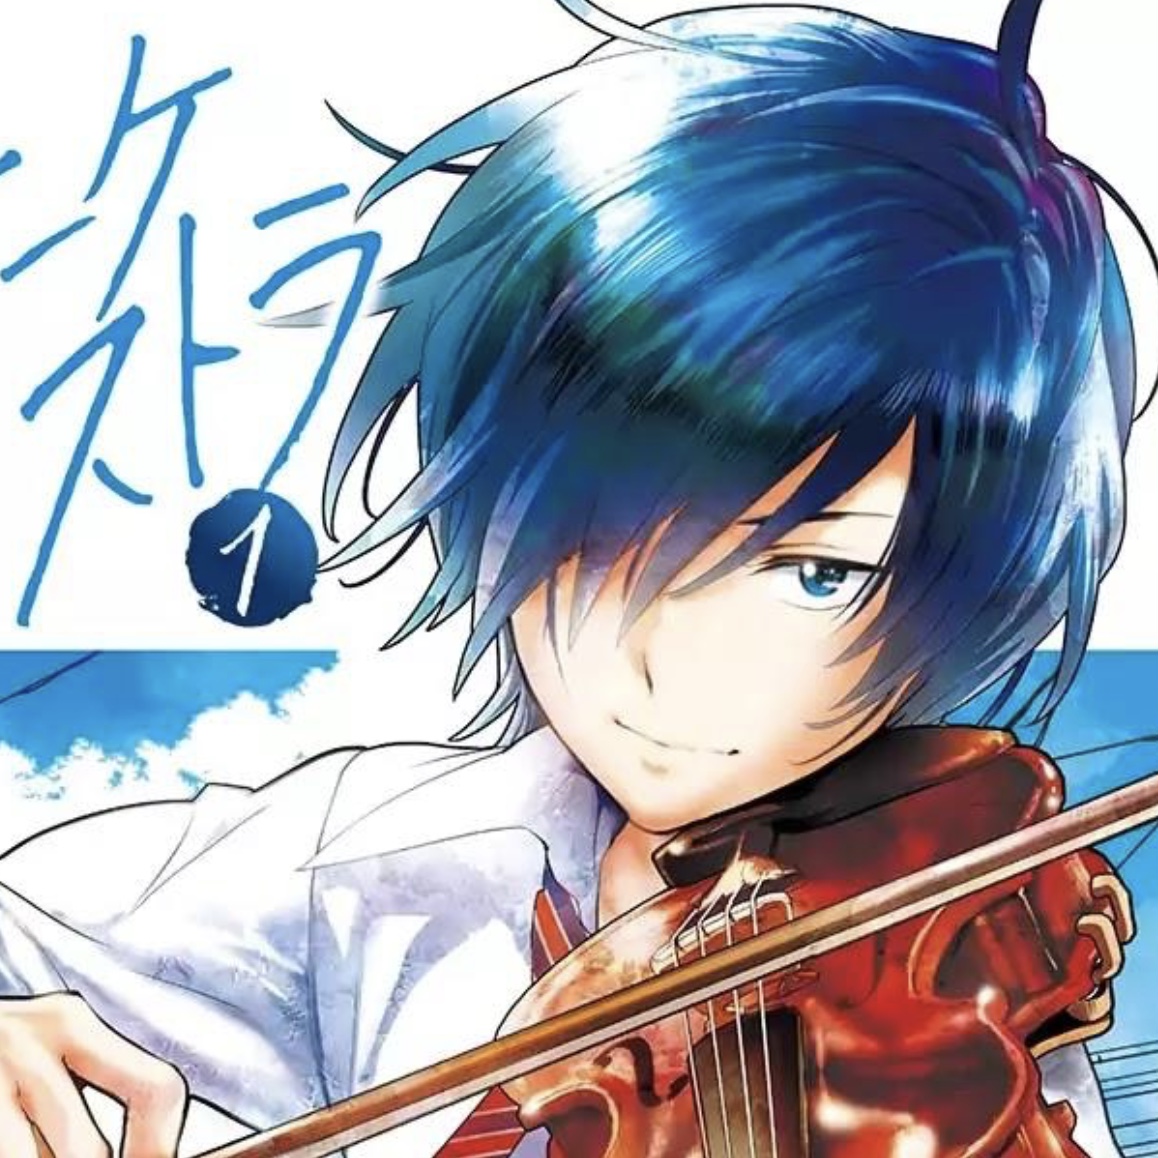 Anime girl playing violin